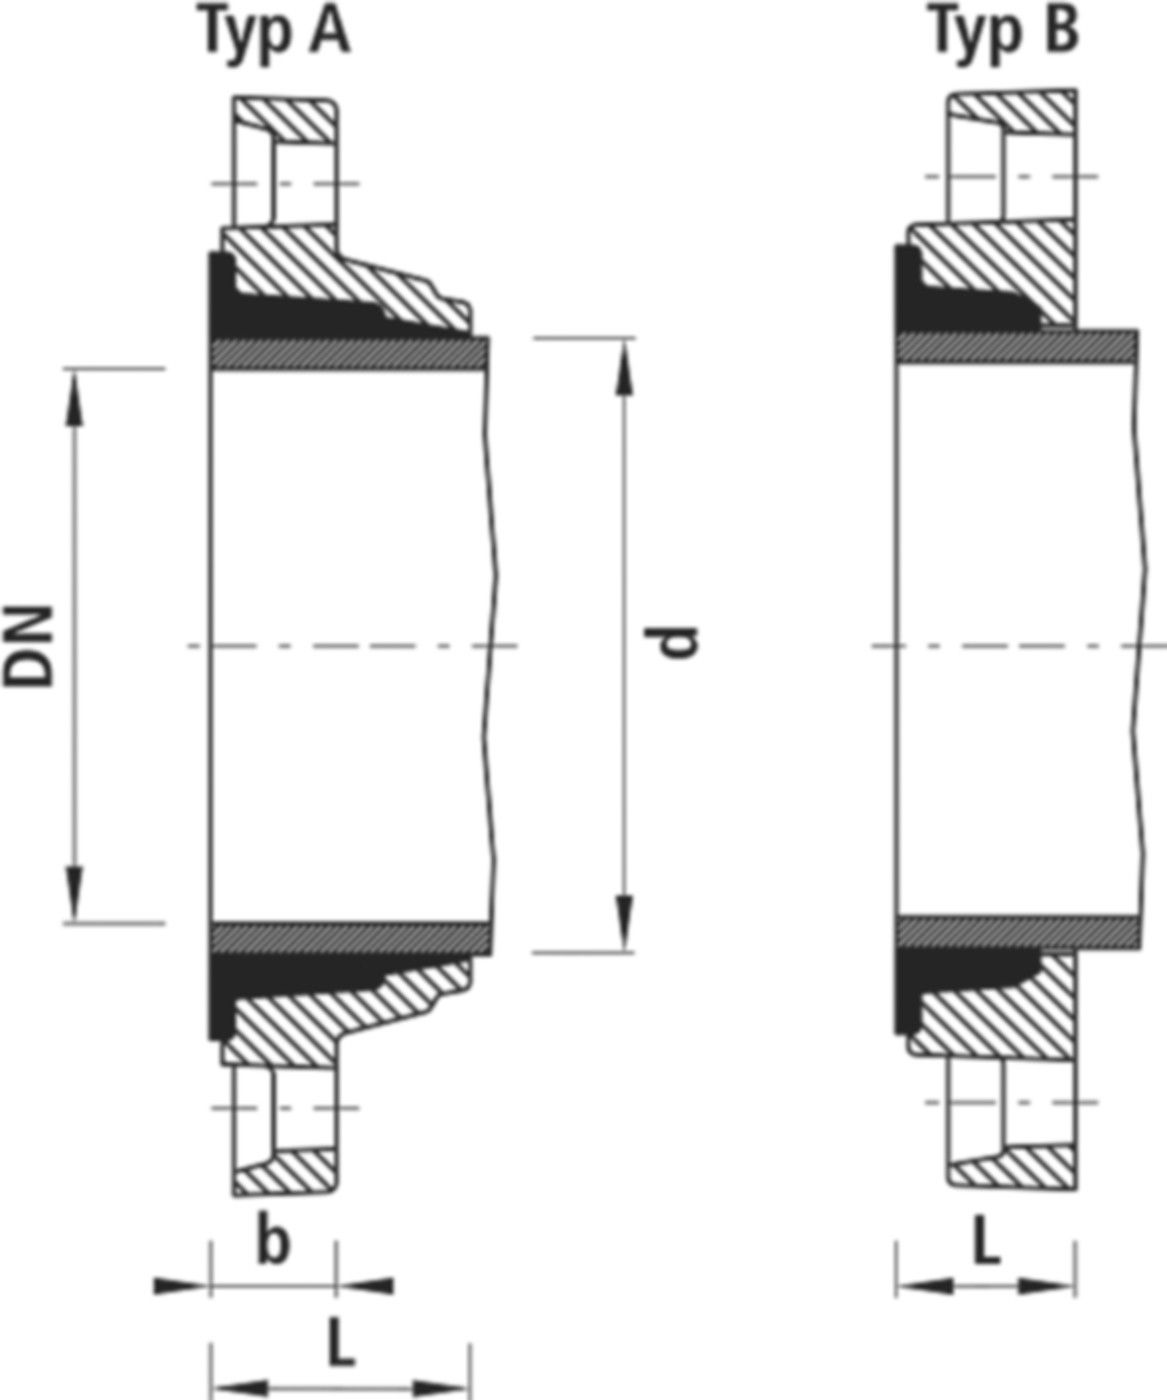 Zweikammer-Flansch für Stahlrohre 7130 PN 10/16 DN 125 / AD 139mm - Hawle Flanschformstücke